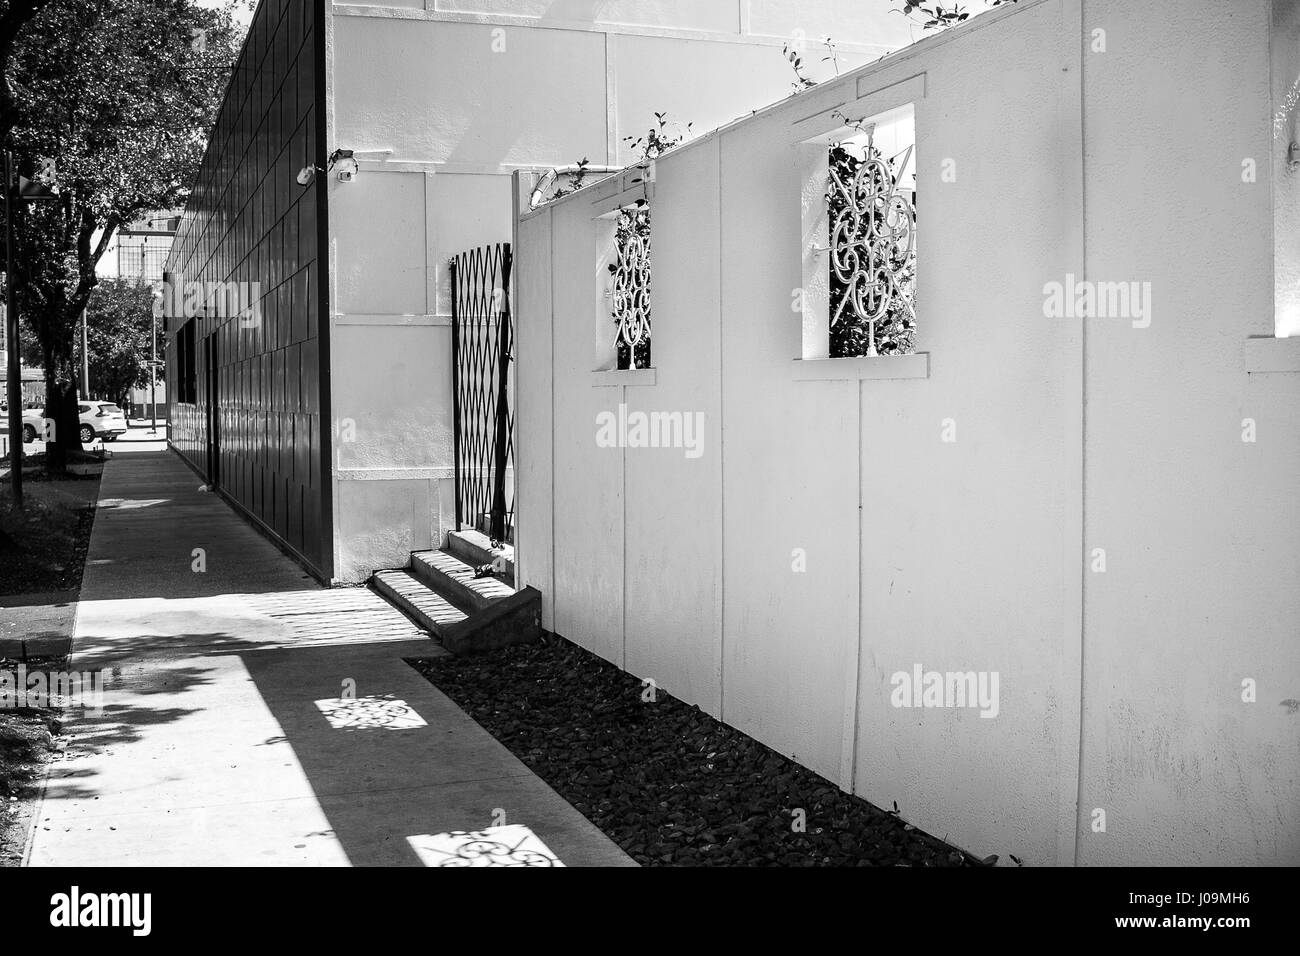 Le noir et blanc d'un long trottoir avec des ombres sur les fenêtres du mur voisin. Banque D'Images